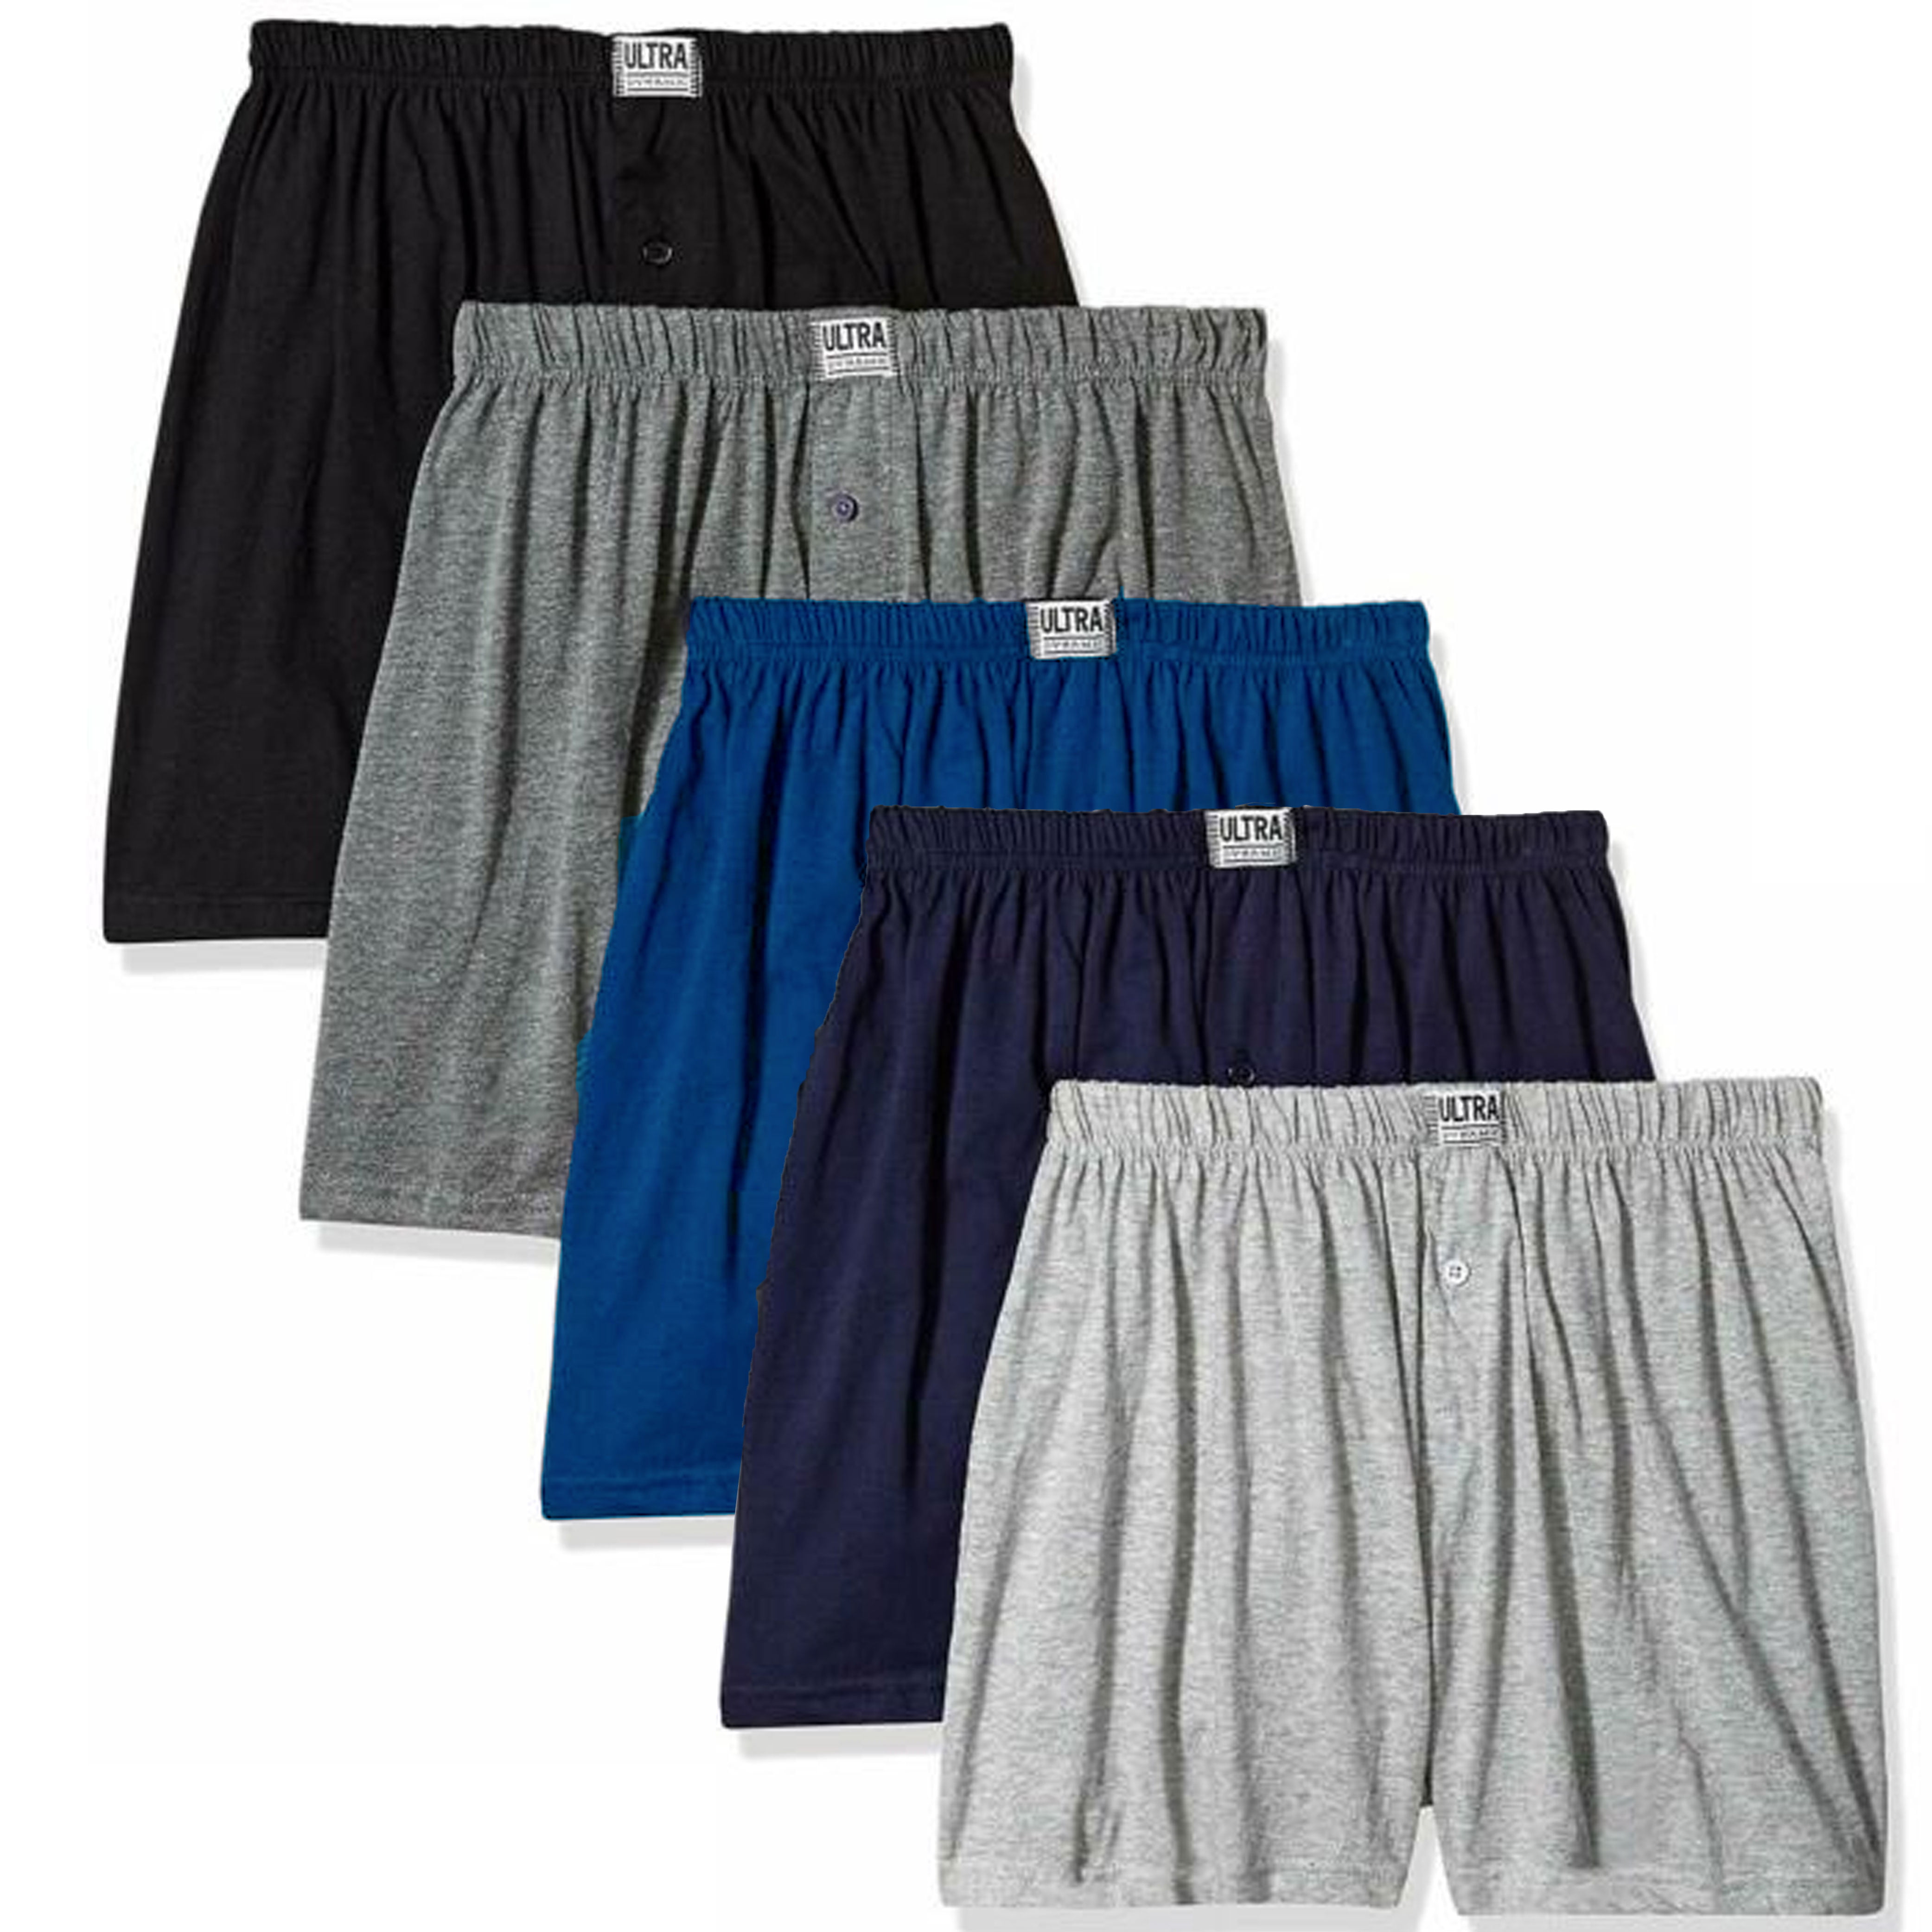 2pc Men's Knit Shorts 100% Cotton Plain Solid Assorted Colors Underwear M - Walmart.com